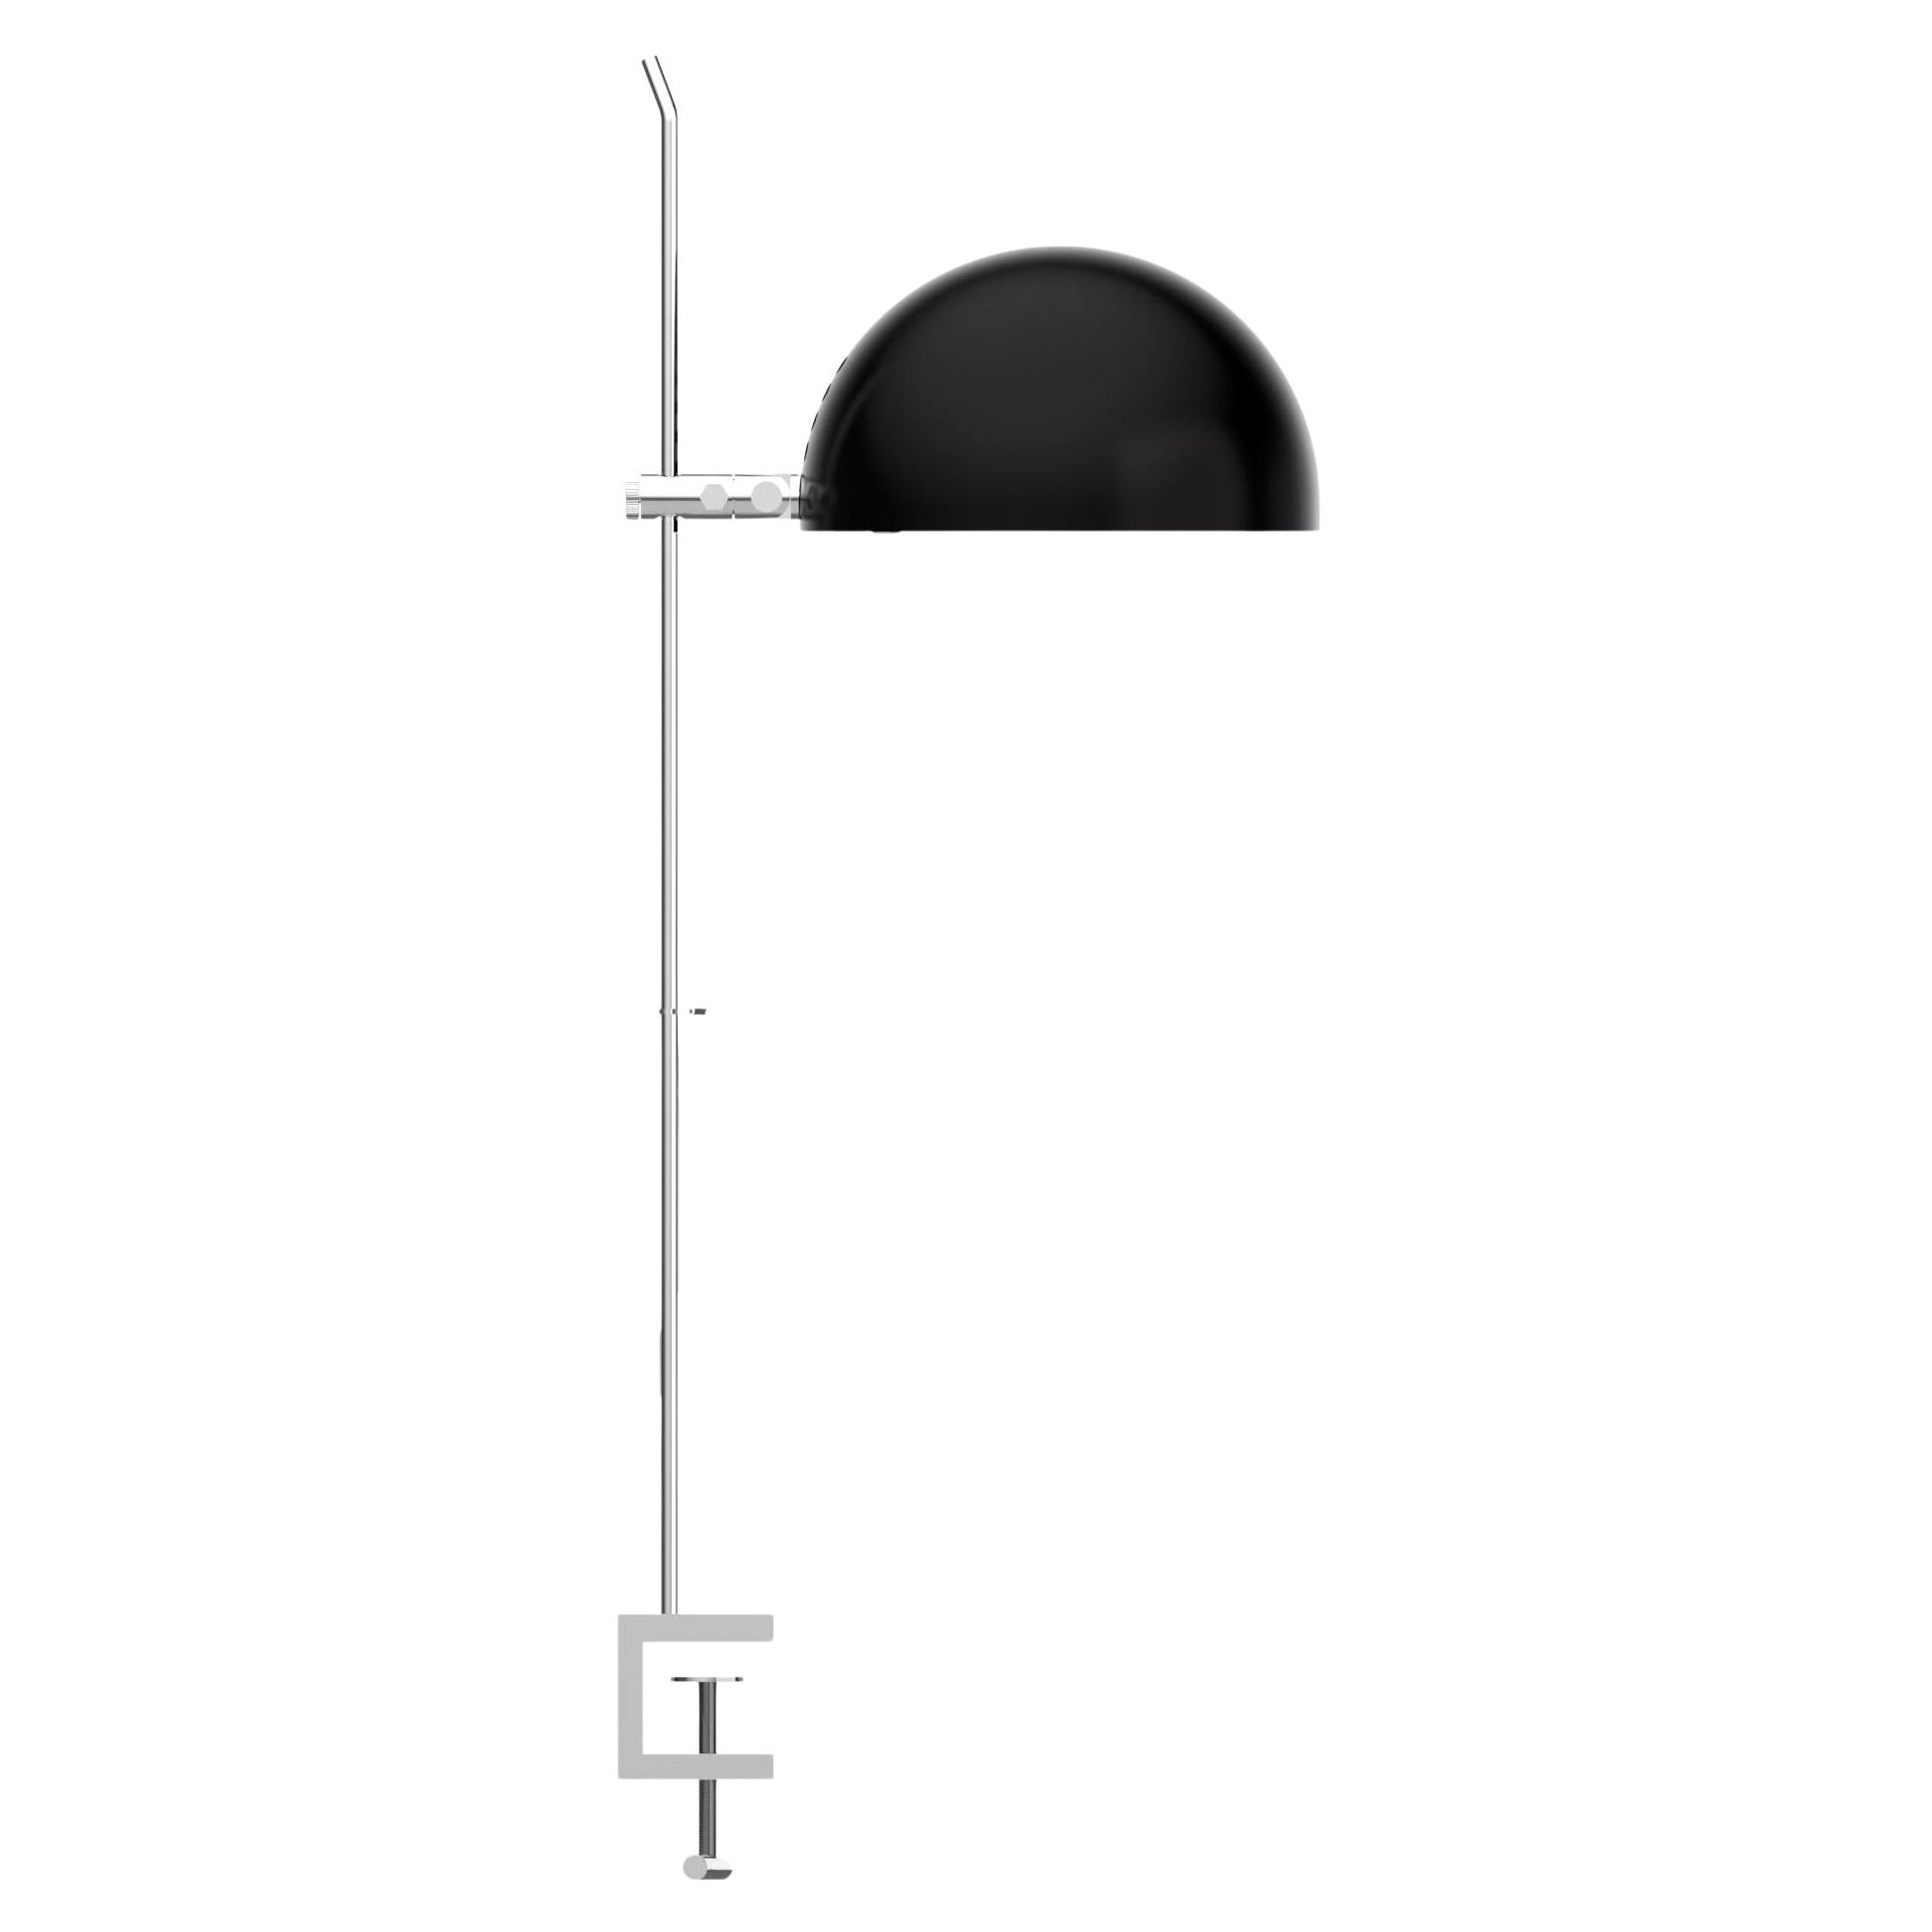 Alain Richard 'A22f' Task Lamp in Black for Disderot For Sale